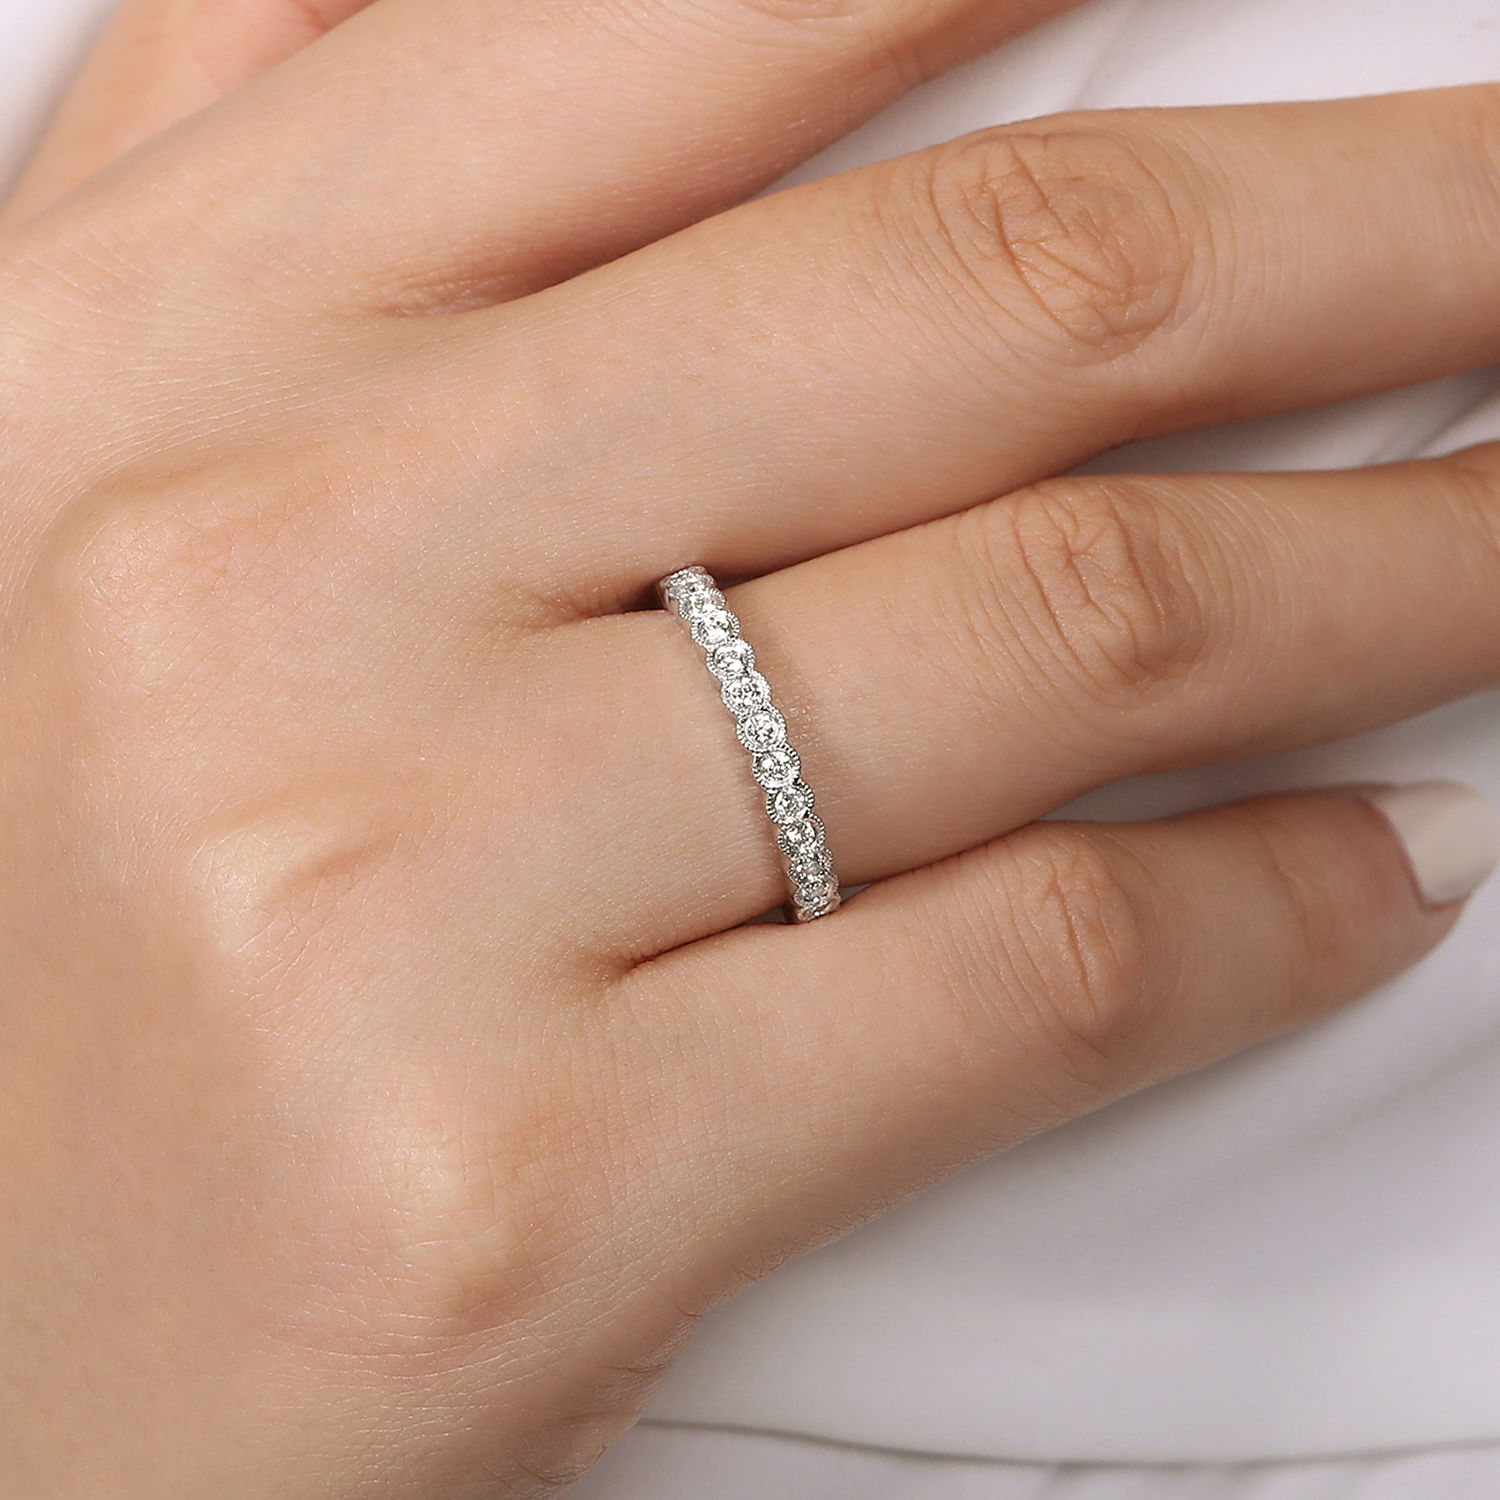 14K White Gold Diamond Ring with Milgrain Bezel